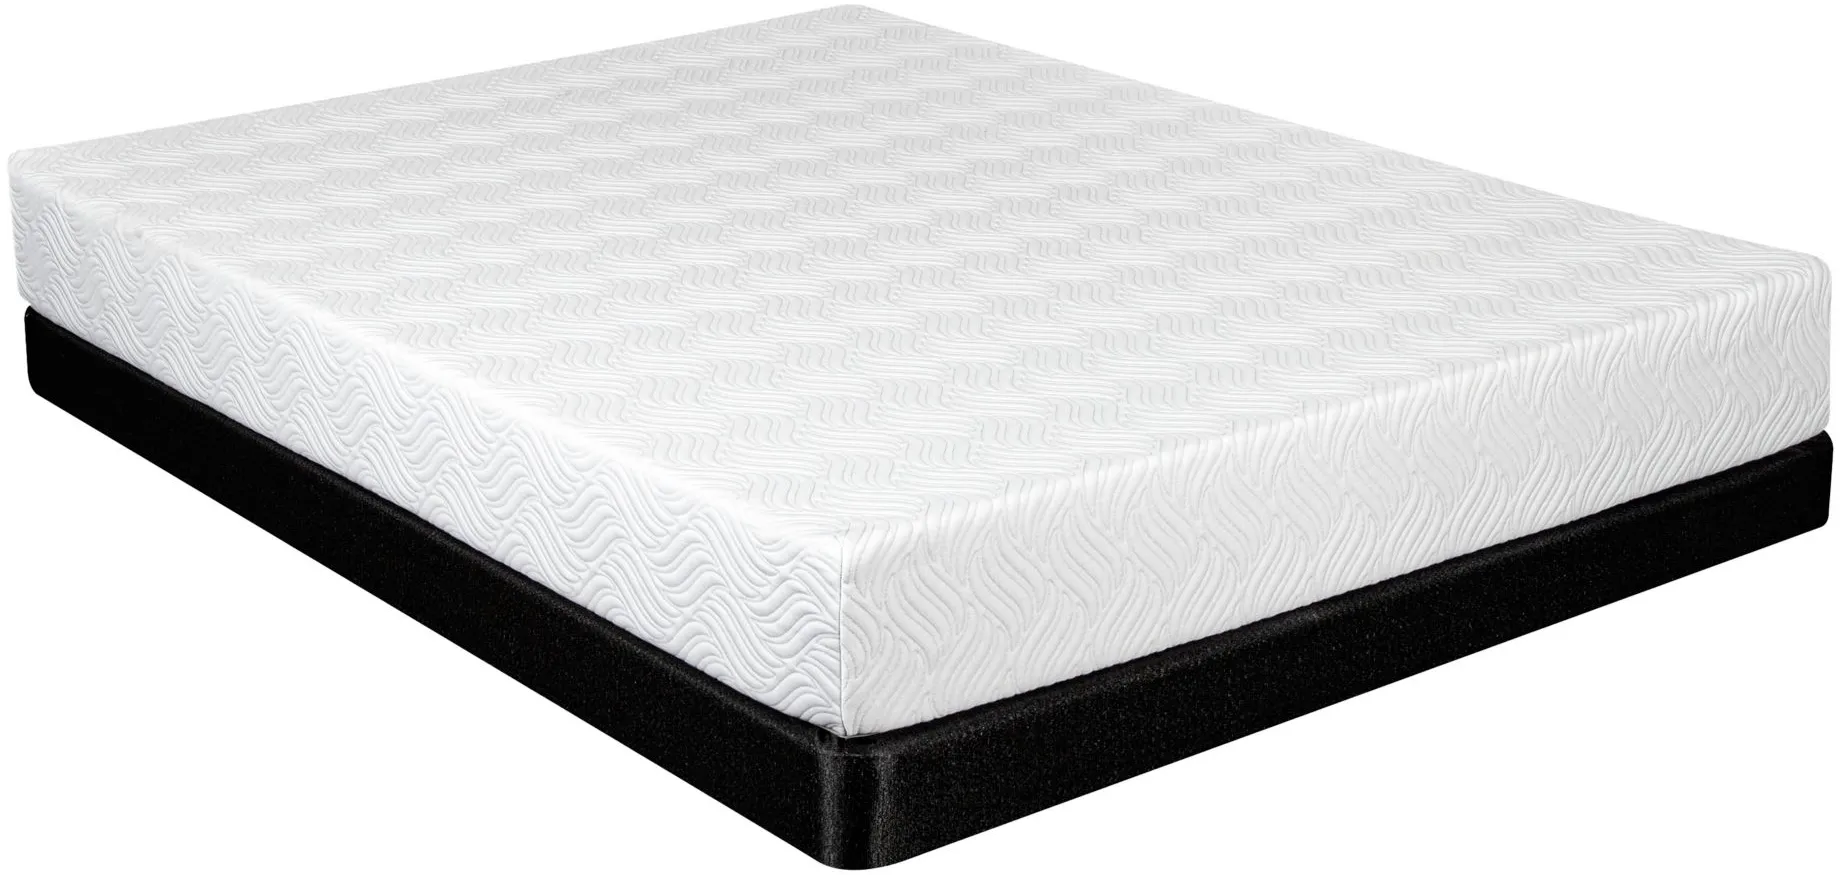 bellanest memory foam mattress reviews